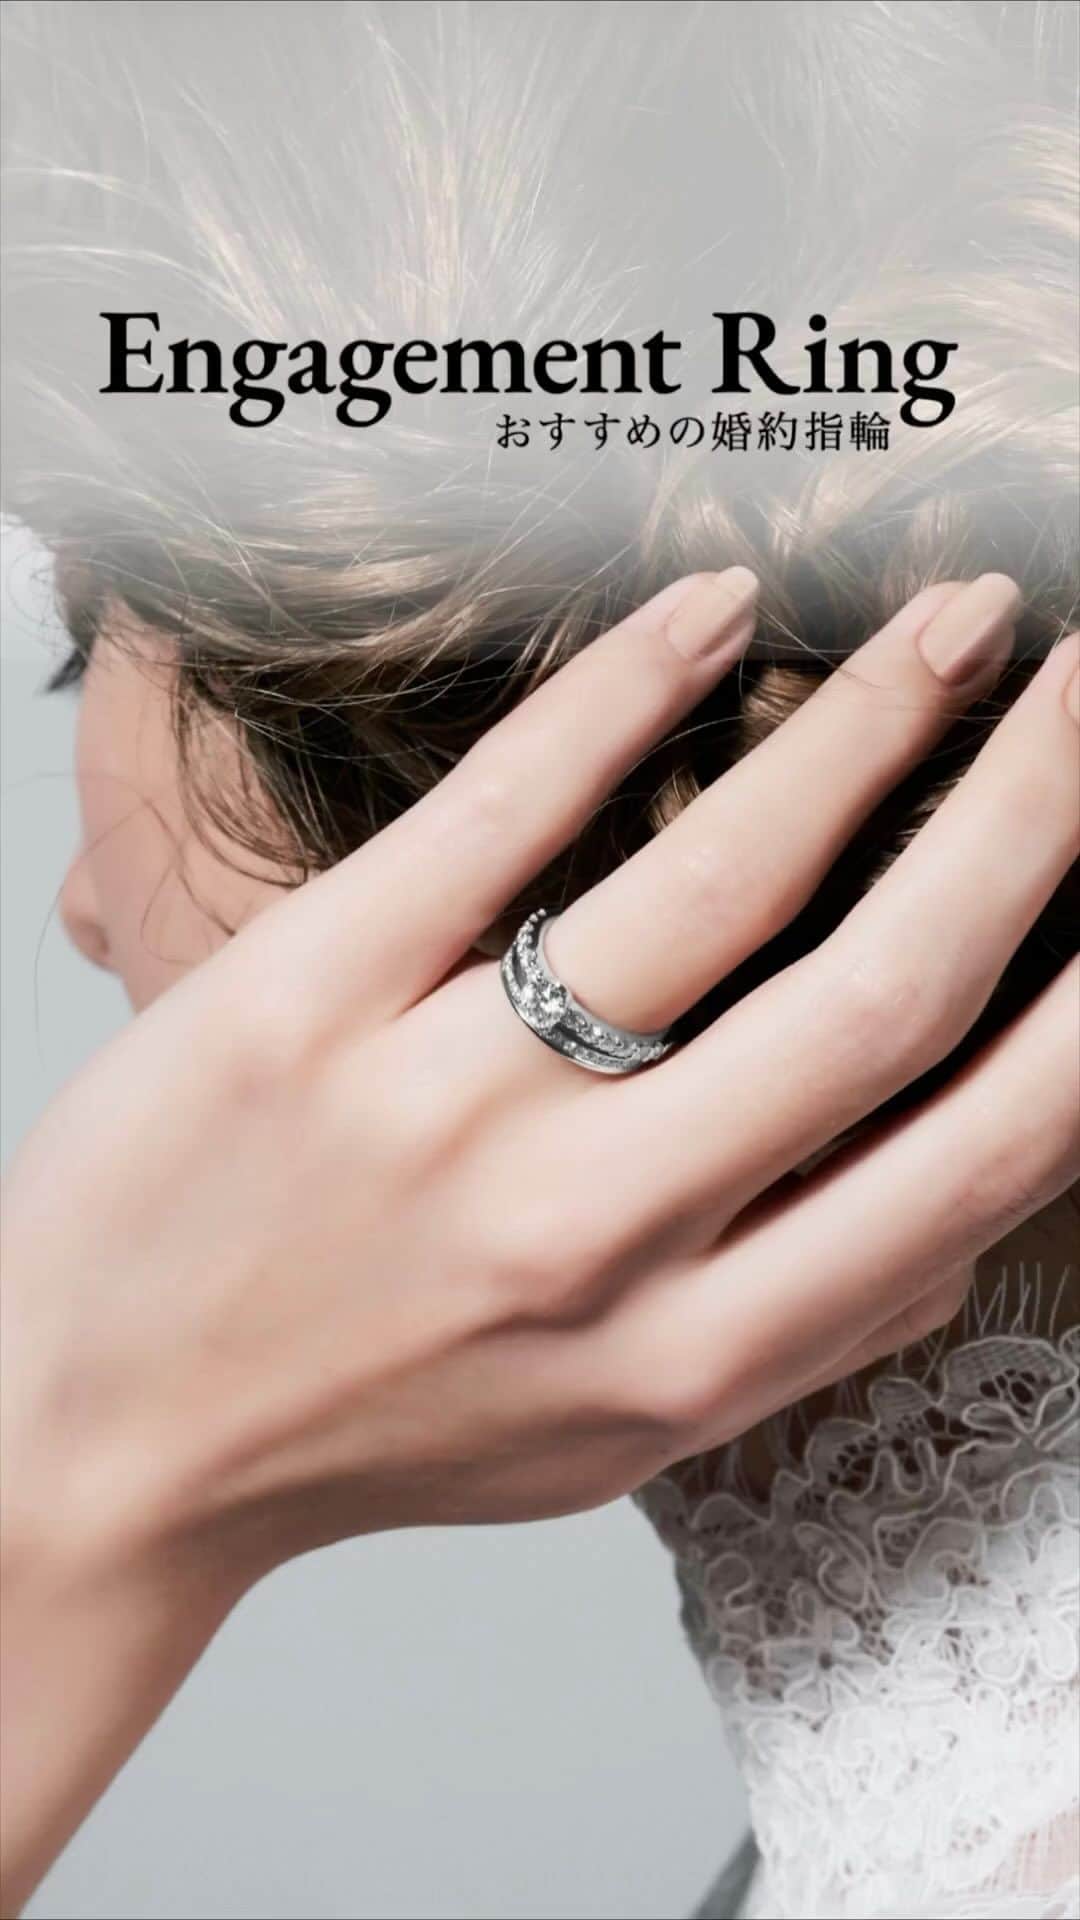 ラザール ダイヤモンド ブティック公式 | 婚約・結婚指輪のインスタグラム：「𝐄𝐍𝐆𝐀𝐆𝐄𝐌𝐄𝐍𝐓 𝐑𝐈𝐍𝐆 ￣￣￣￣￣￣￣￣￣￣￣ 七色の輝きを放つラザール ダイヤモンドの婚約指輪。   一世紀を超えて世界中の花嫁から選ばれ続ける 奇跡の輝きをあなたの薬指に。  #lazarediamond #ラザールダイヤモンド #婚約指輪 #エンゲージリング #NEWYORK #NYC #ダイヤモンド #ダイヤモンドリング #ブライダルリング #ブライダルリング専門店」